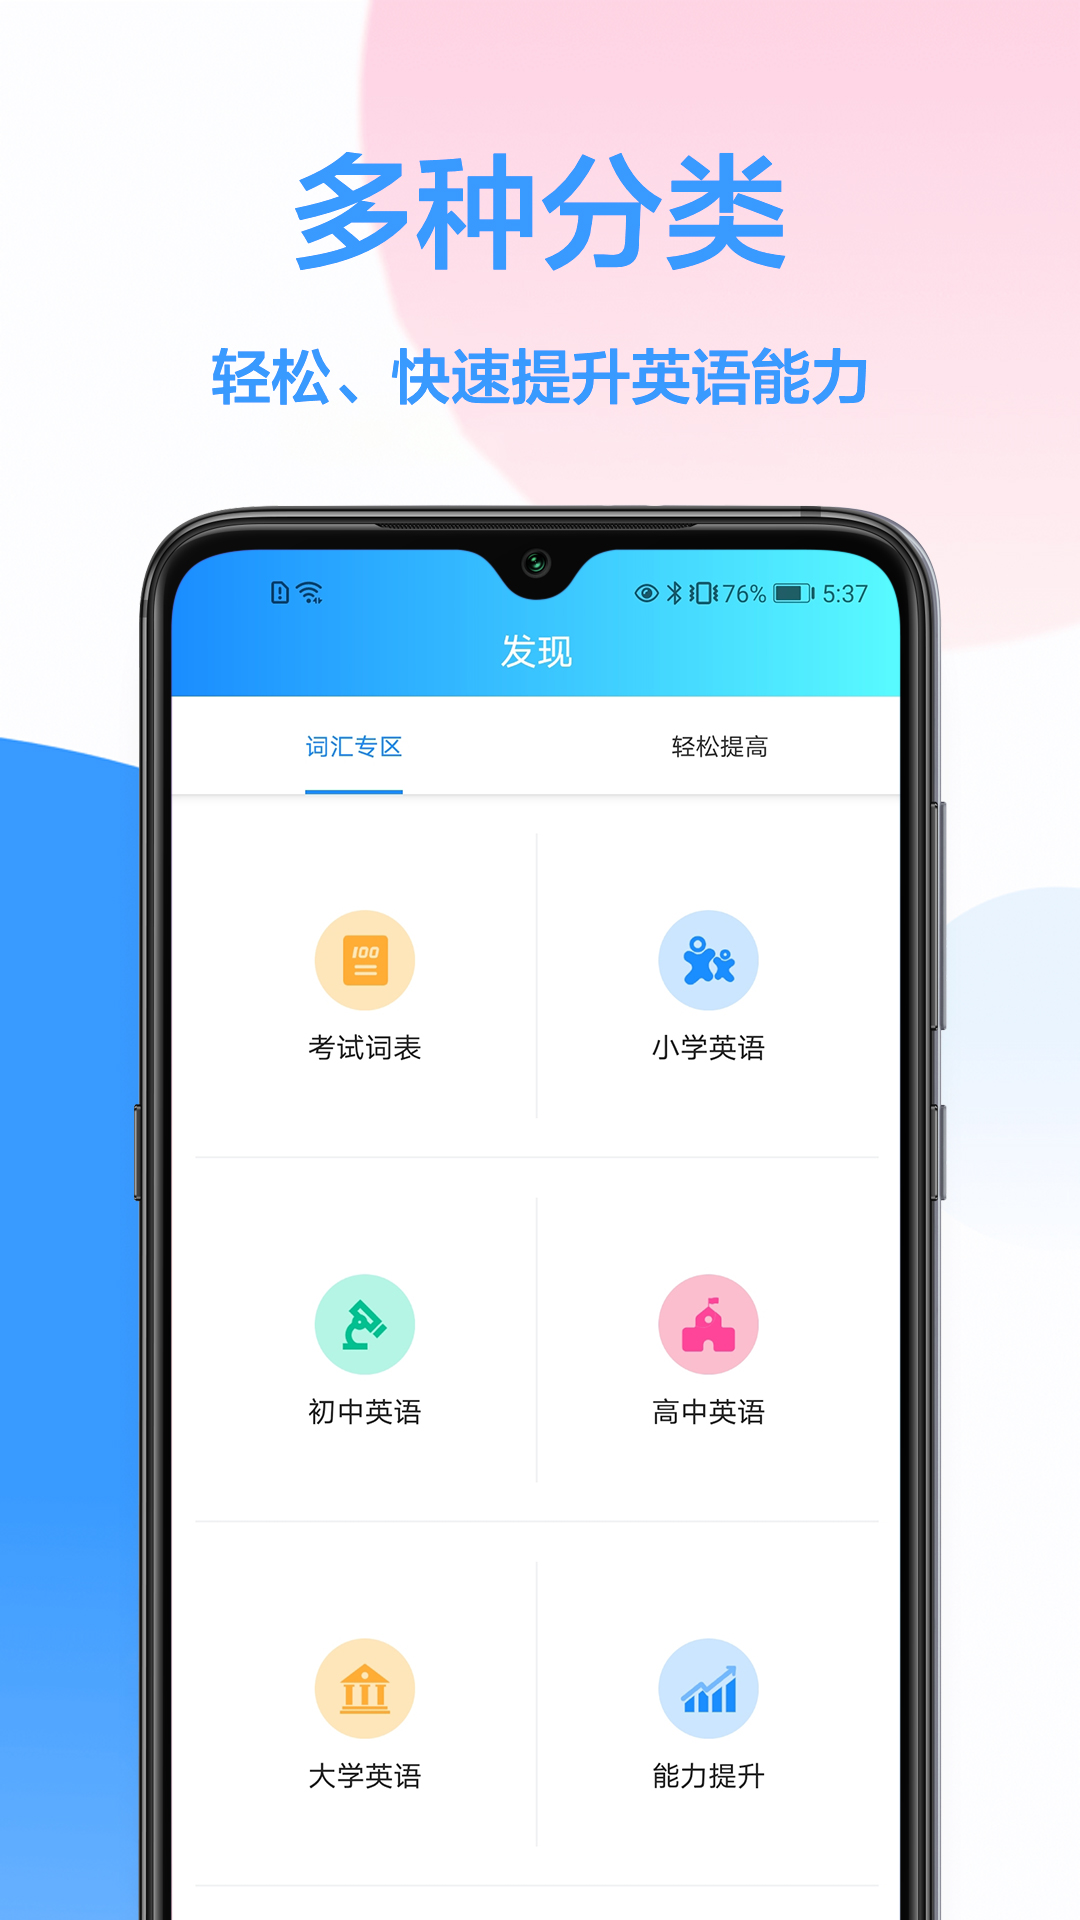 韩语翻译器app 1.0.0 截图2